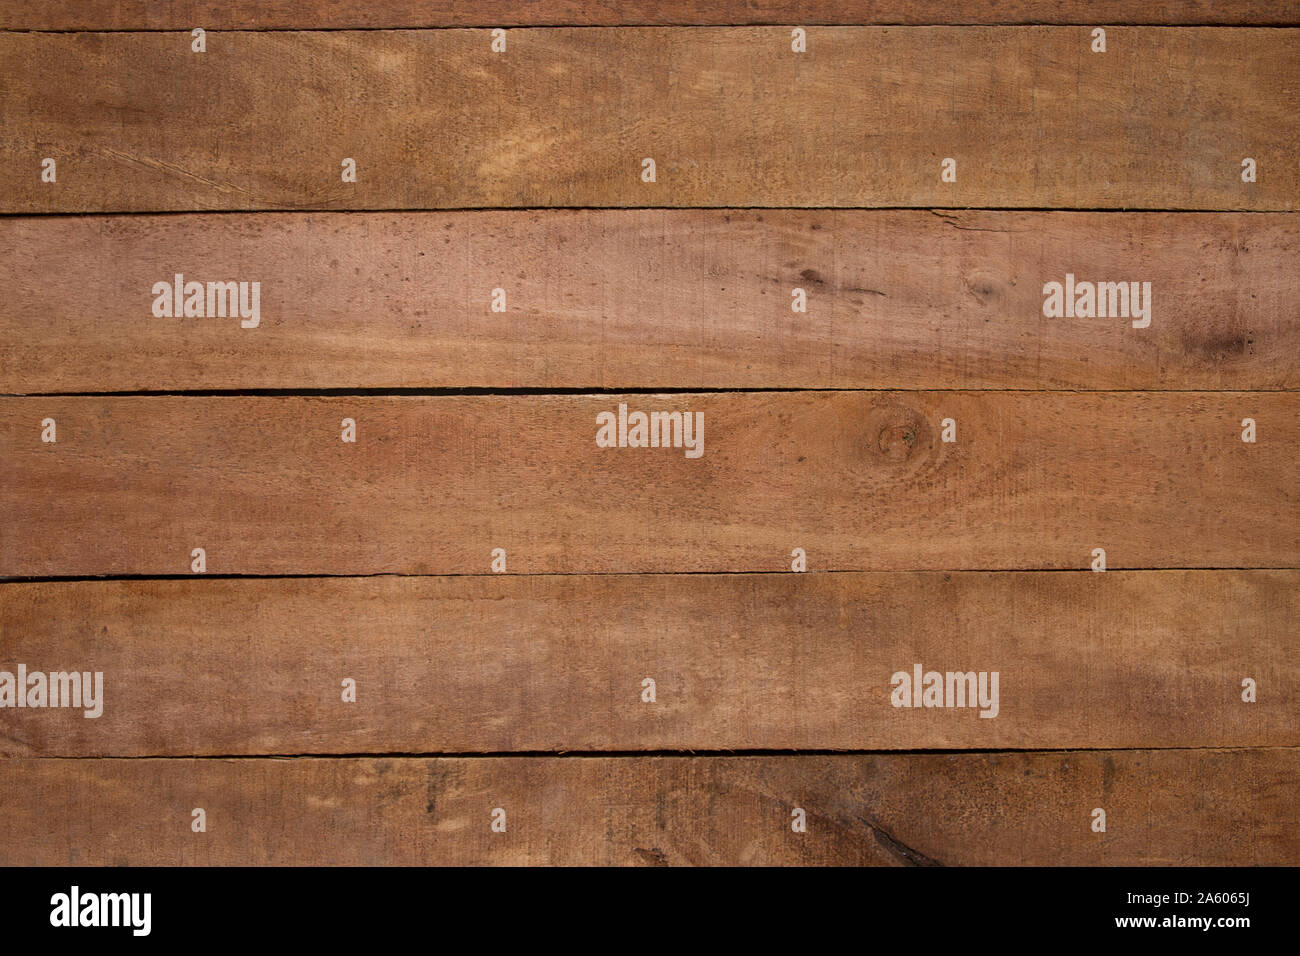 Einfache Holz- Textur Hintergrund aus mehreren Längen der rauhen finishde Schnittholz - Hintergründe und Texturen Design Element. Stockfoto